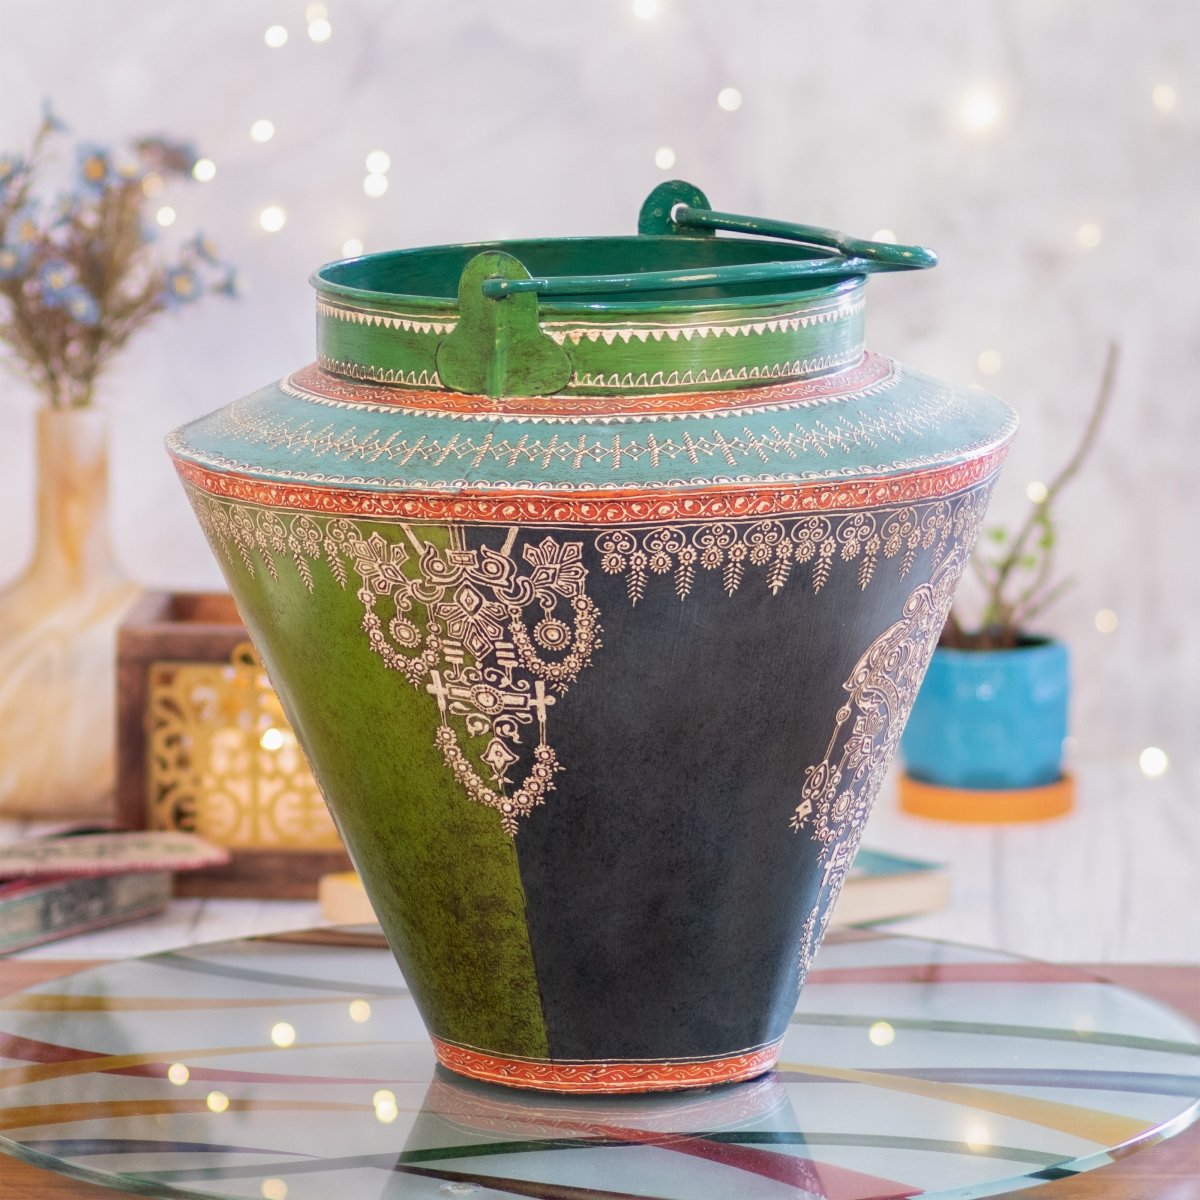 Kezevel Metal Decorative Floor Vase Pot - Antique Green Blue Handcrafted Vases for Living Room Corner, Metal Pot Home Decor